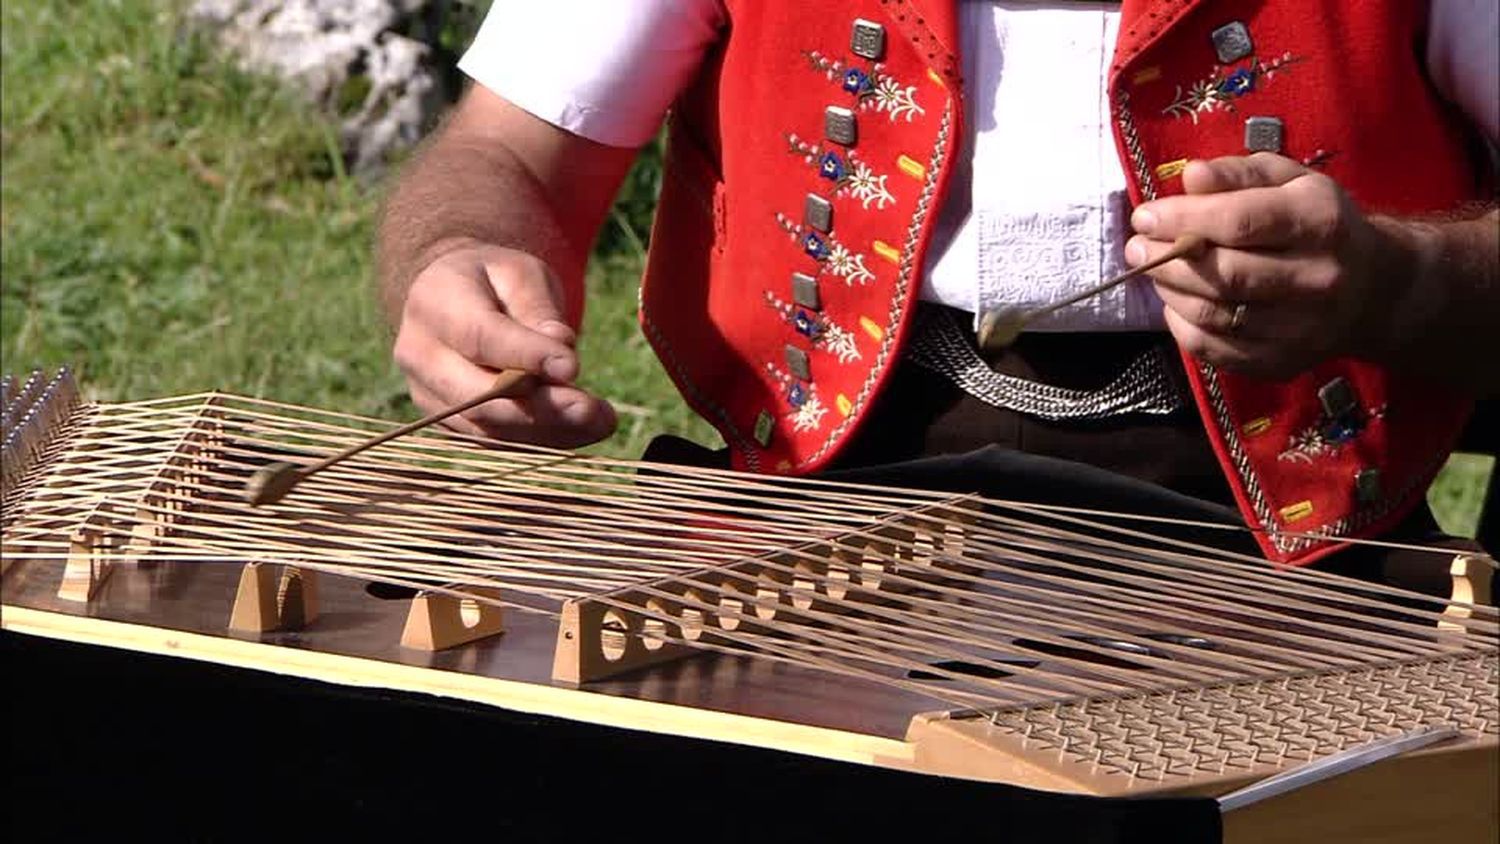 Le hackbrett appenzellois, un instrument phare de la musique folklorique suisse.